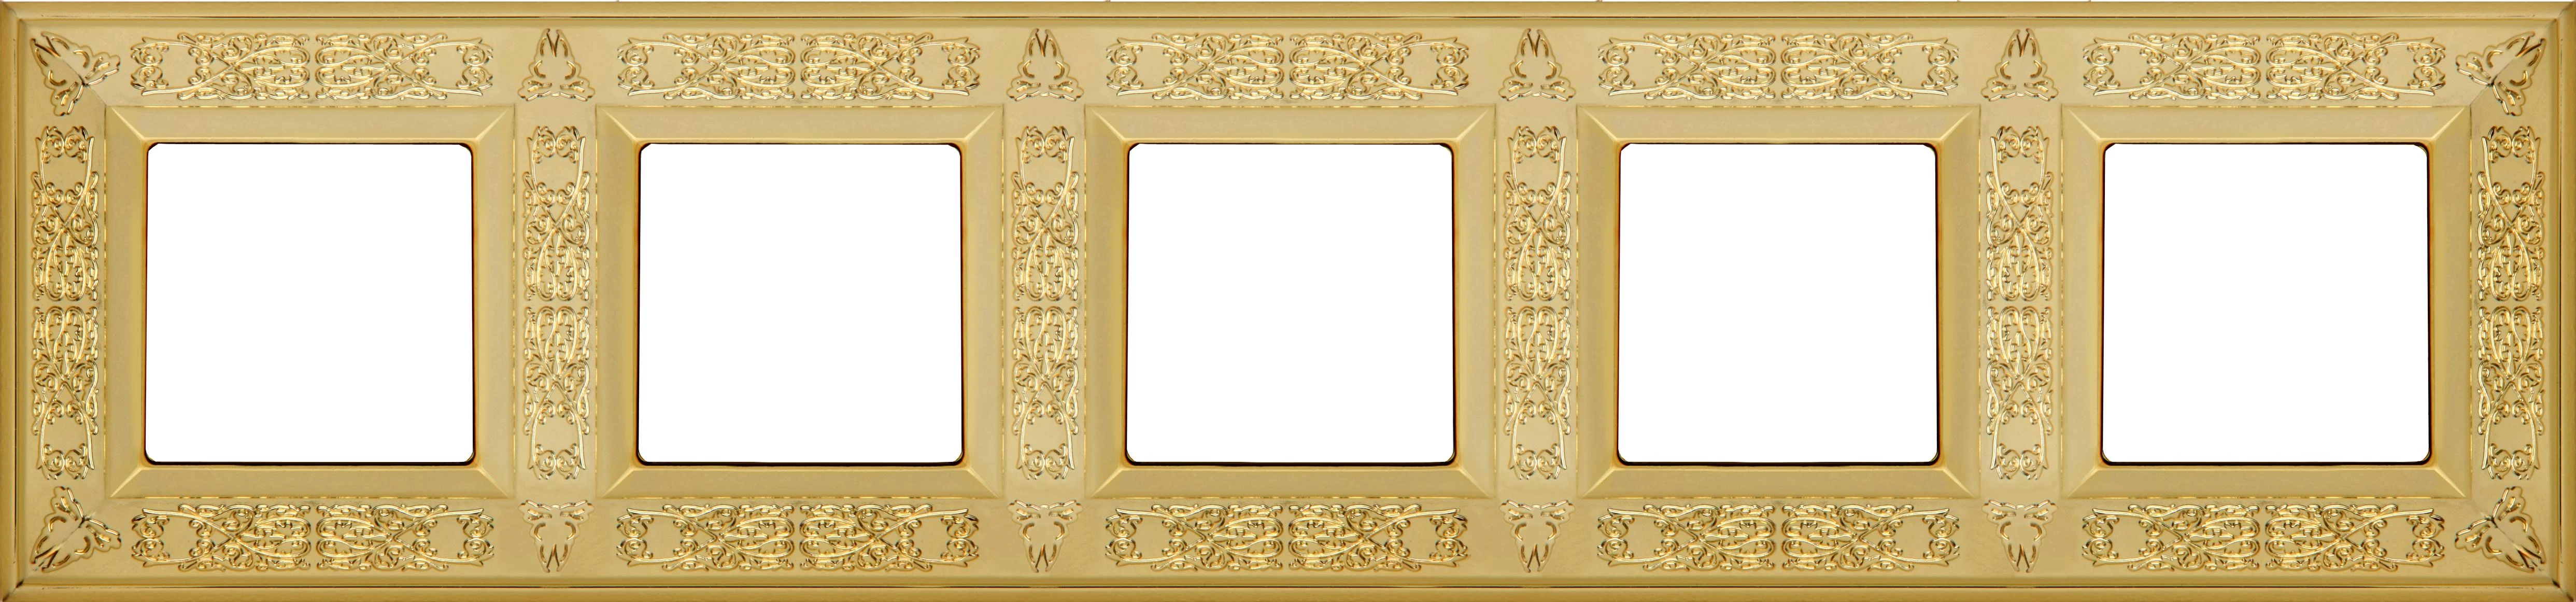  артикул FD01415OB название Рамка 5-ая (пятерная), цвет Светлое золото, Granada, Fede